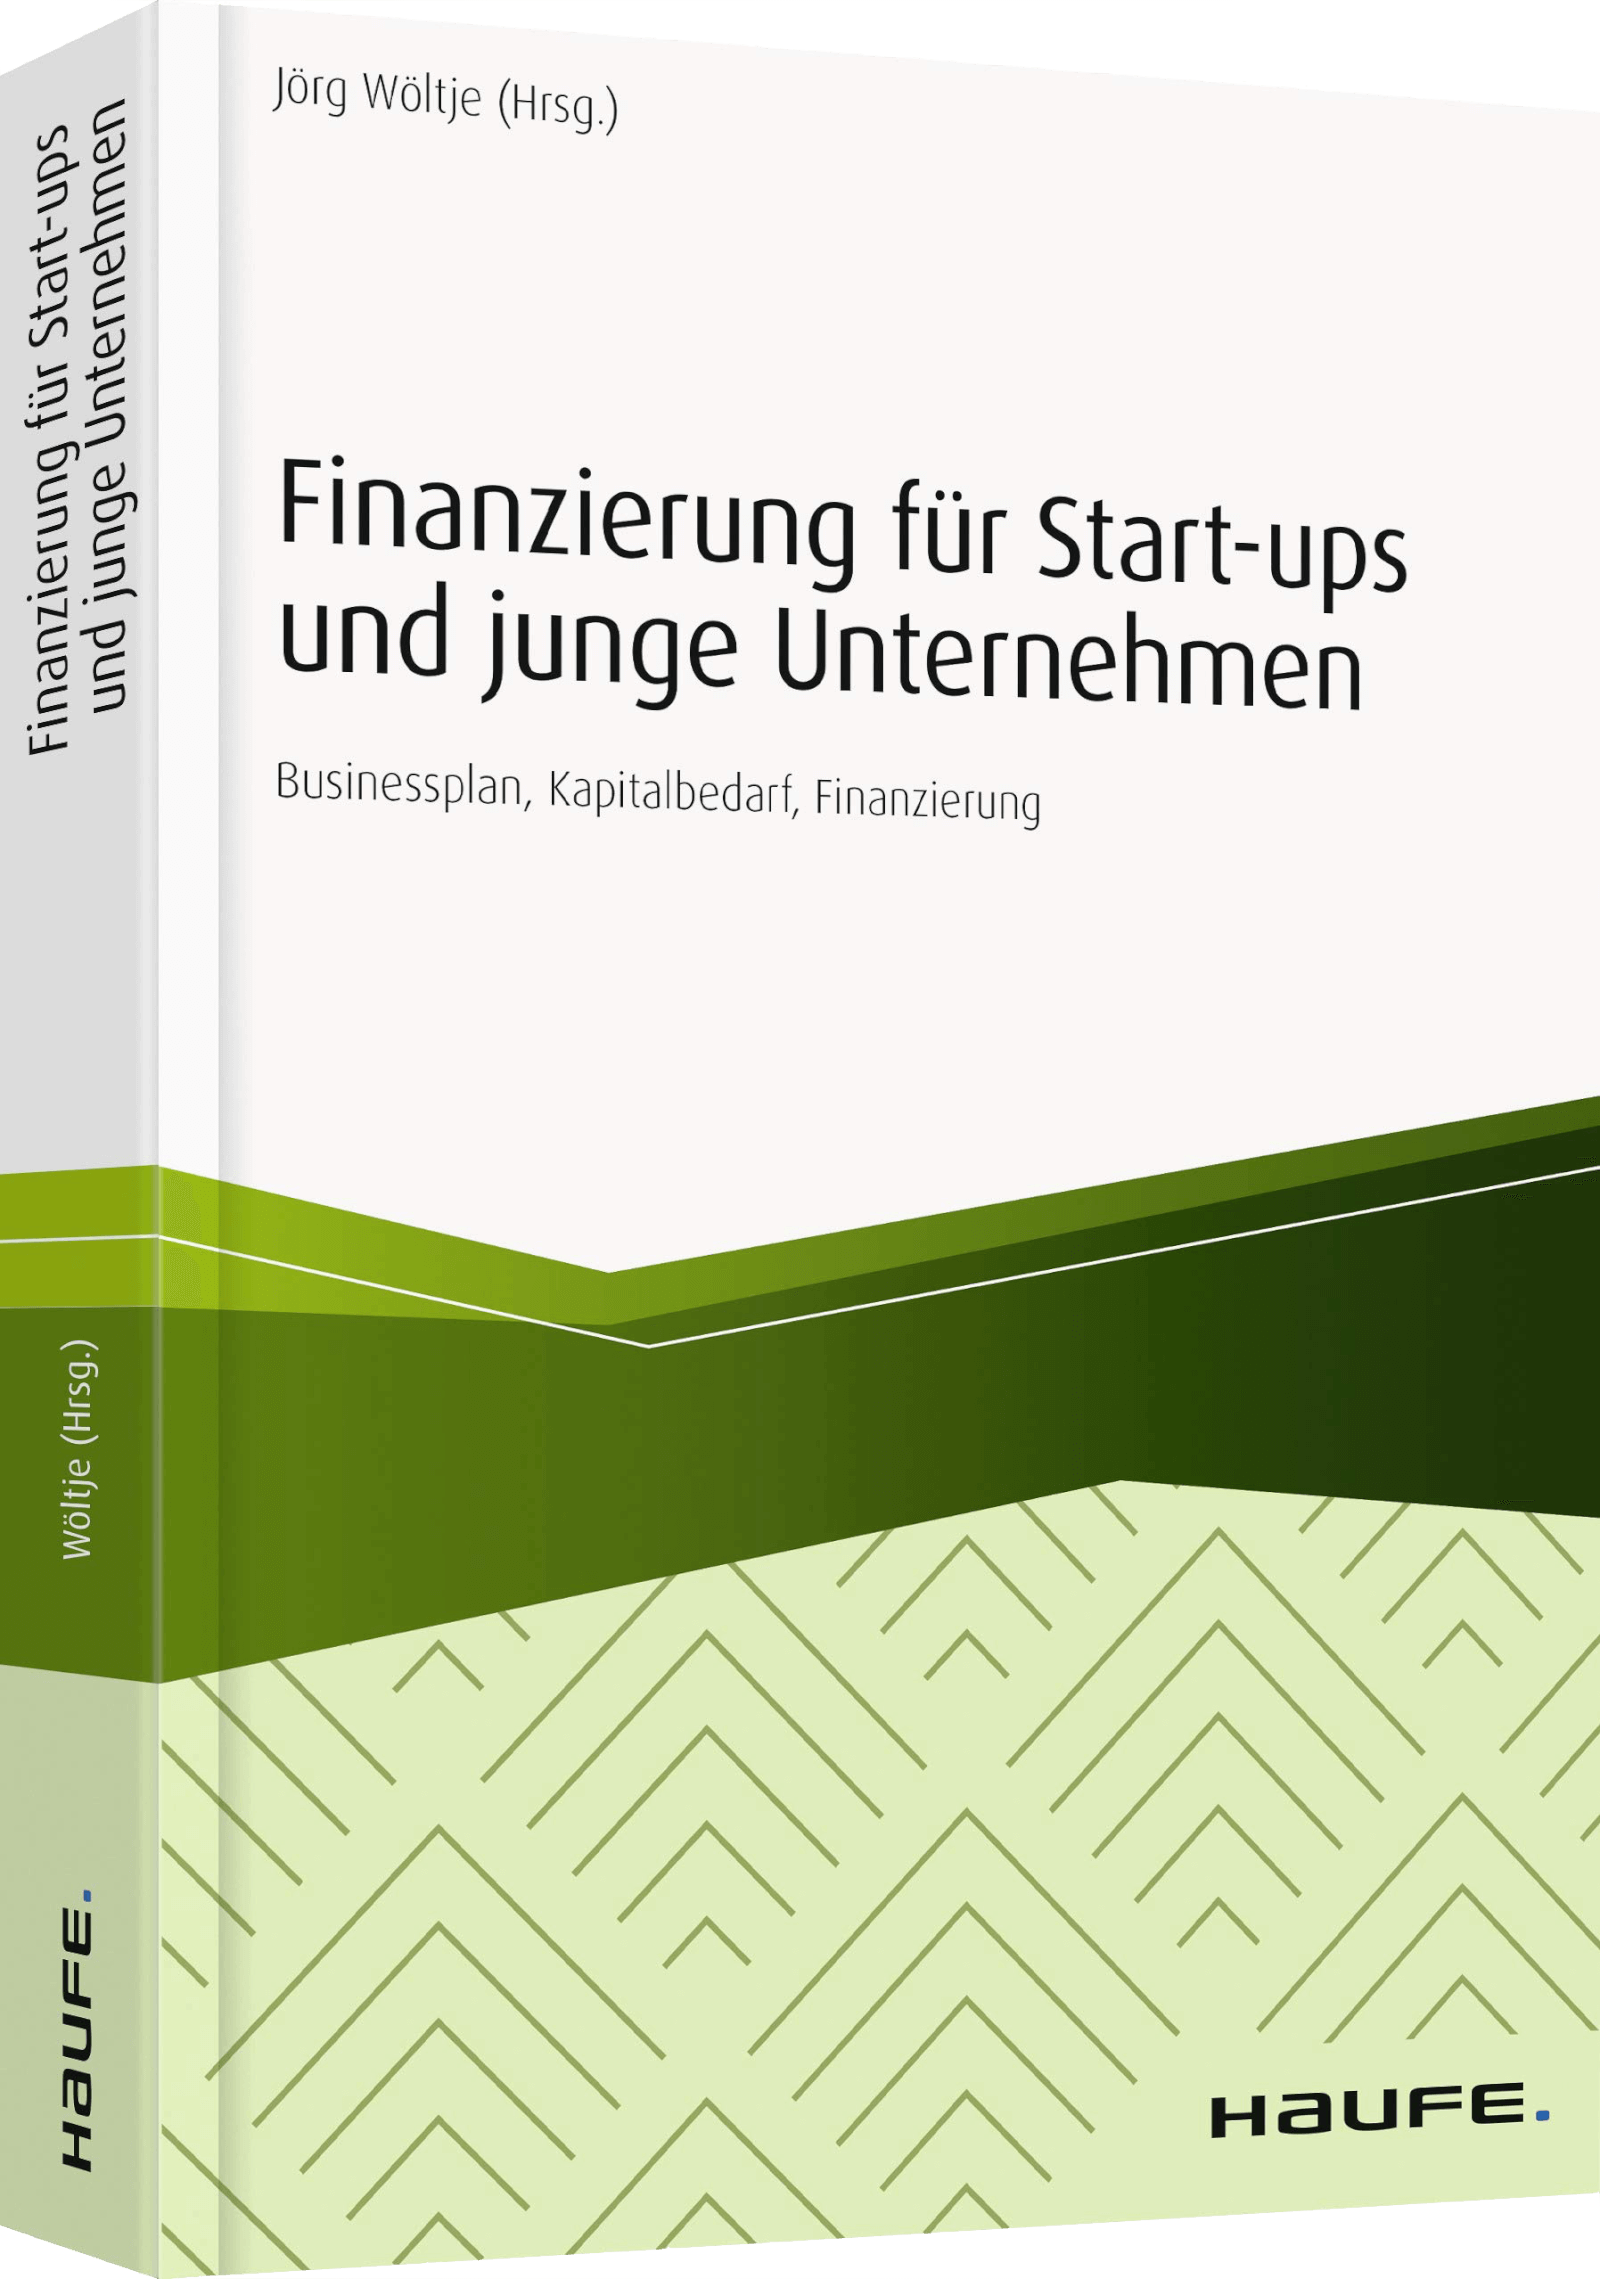 Finanzierung für Start-ups und junge Unternehmen